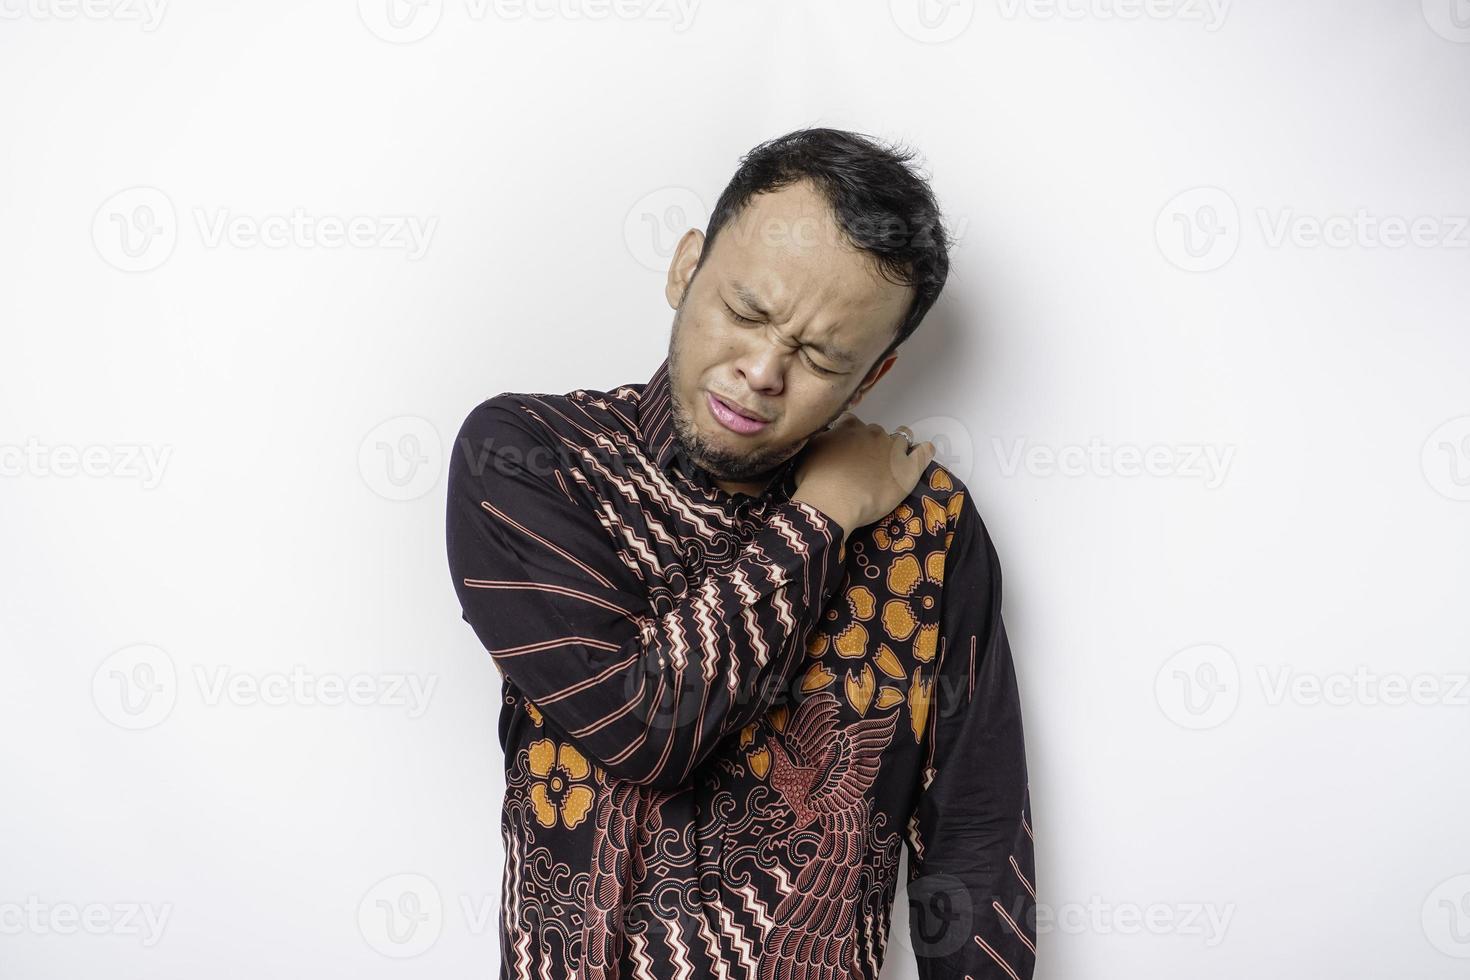 jovem chateado cansado usa camisa batik sofrendo de dor, espasmo muscular no local de trabalho. cansaço, prazo, dor e postura incorreta foto